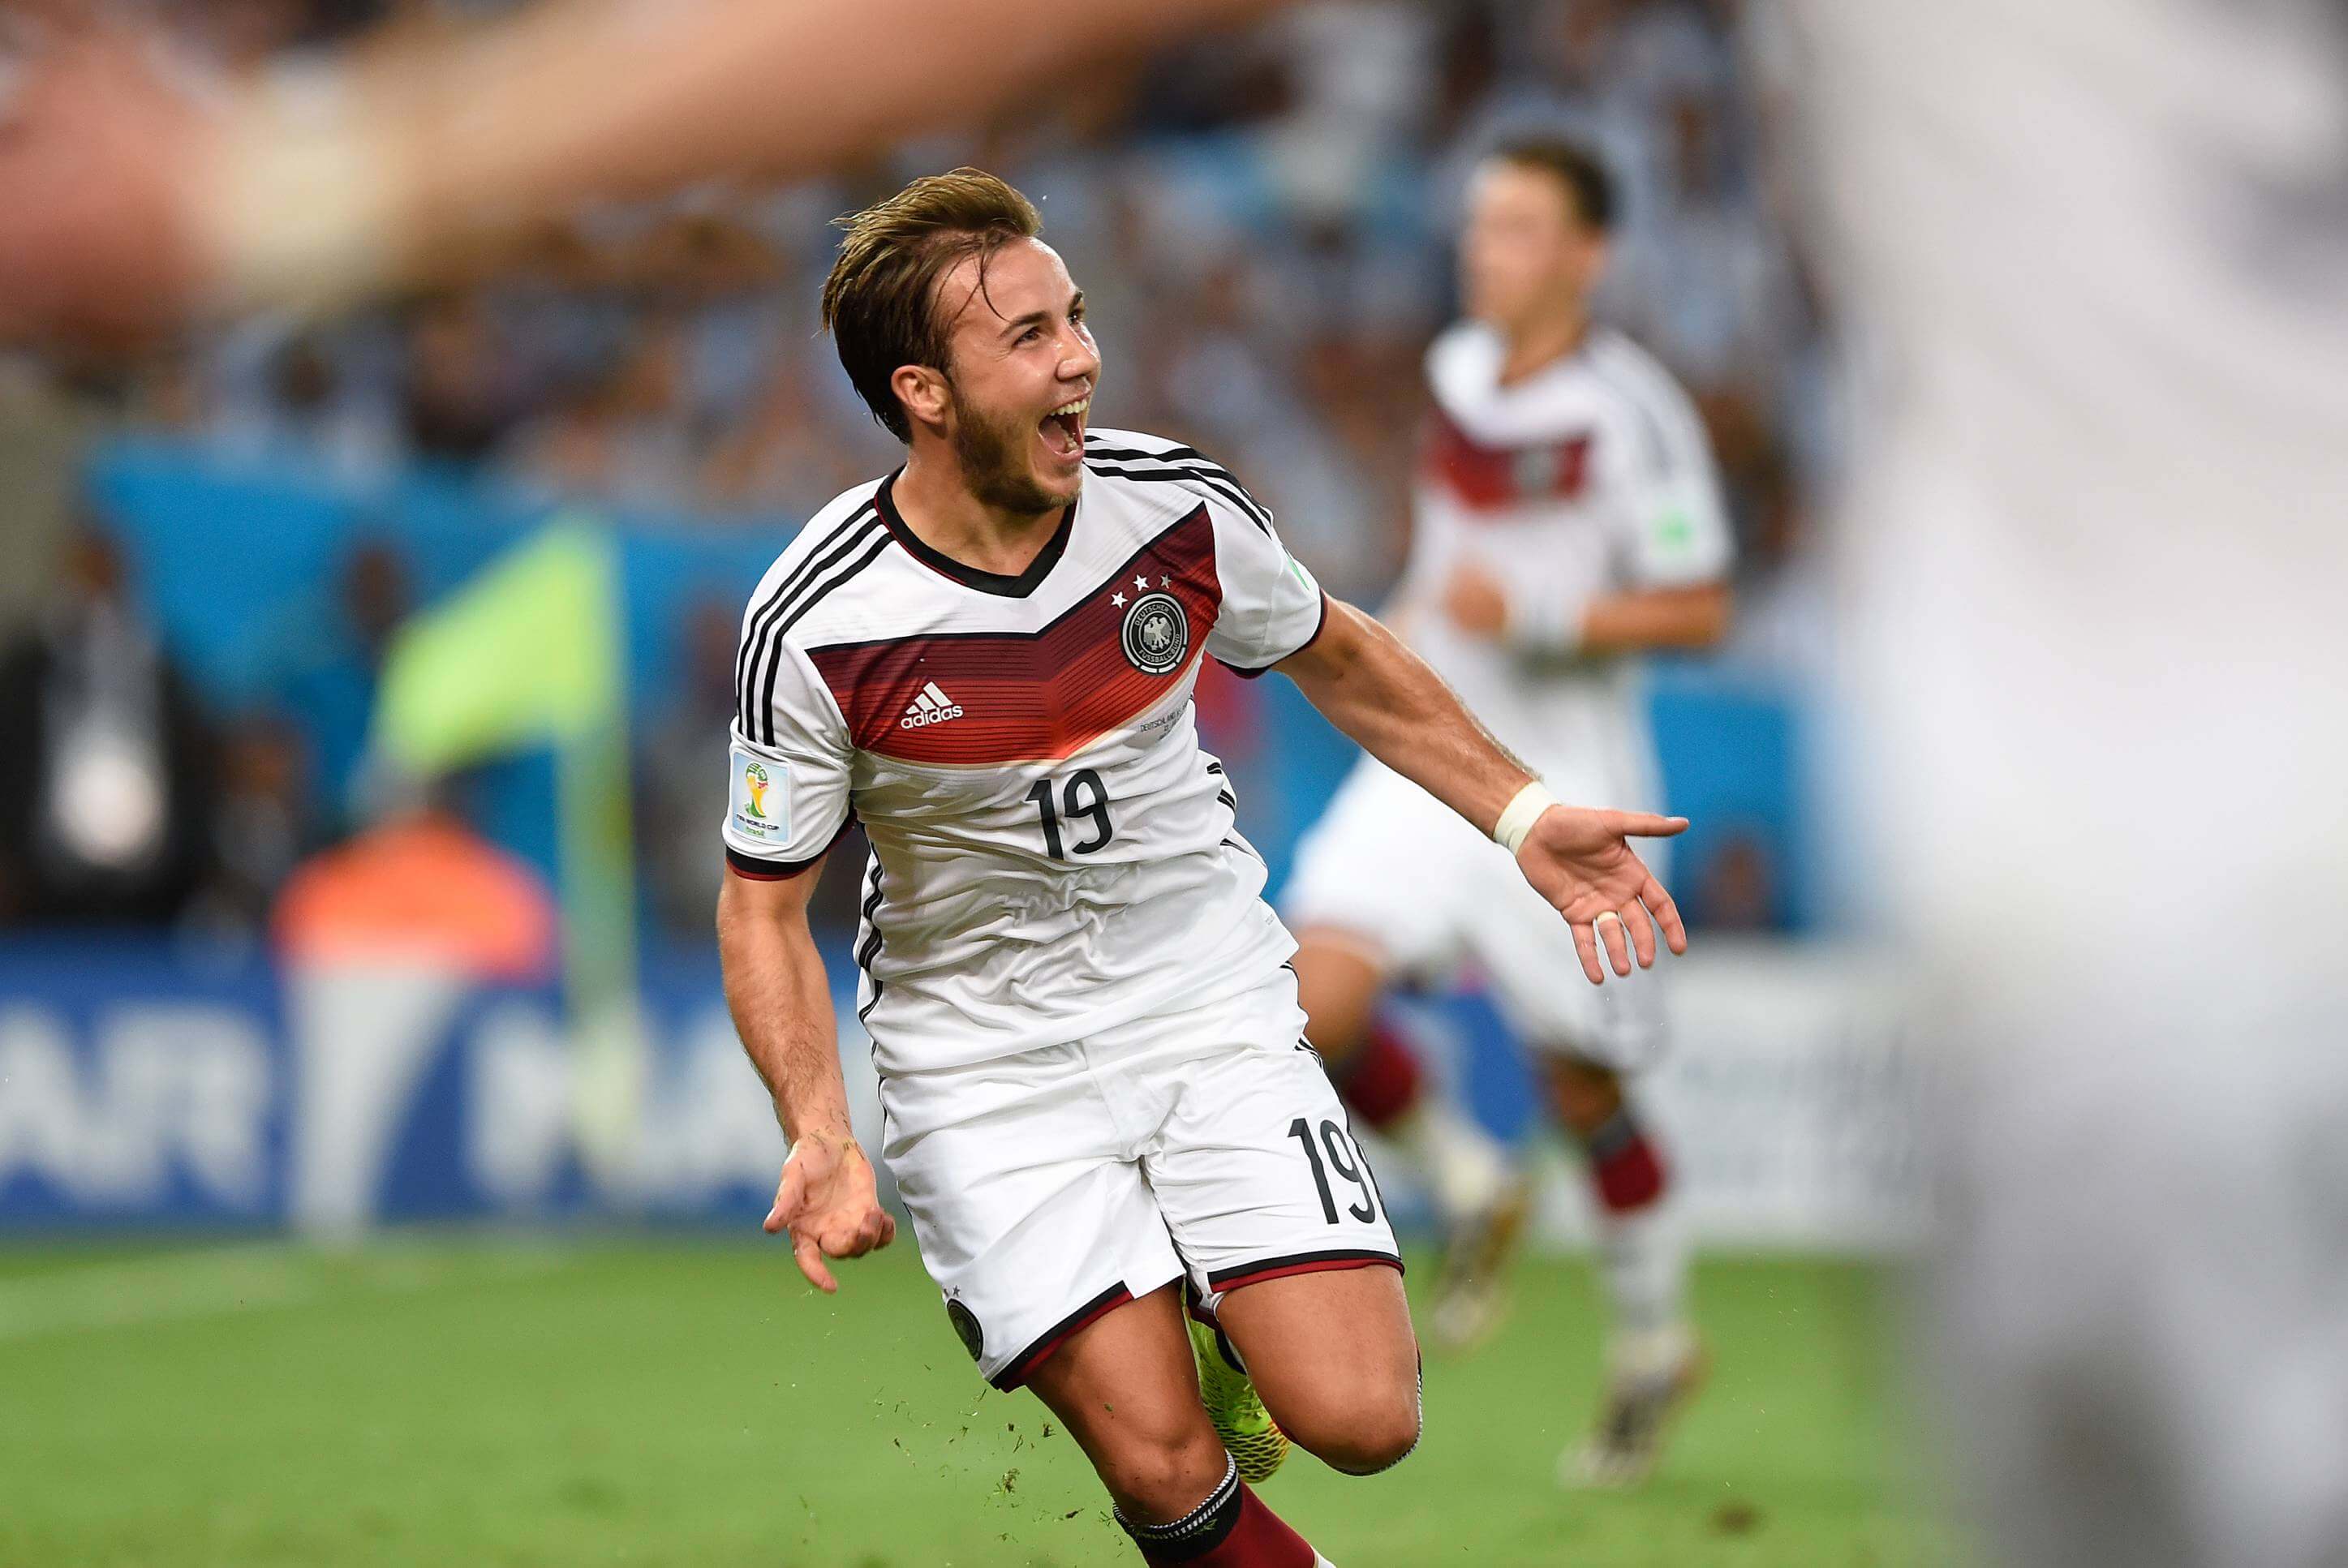 "Mario Götze mag weer hopen op Duitse elftal"; image source: Pro Shots